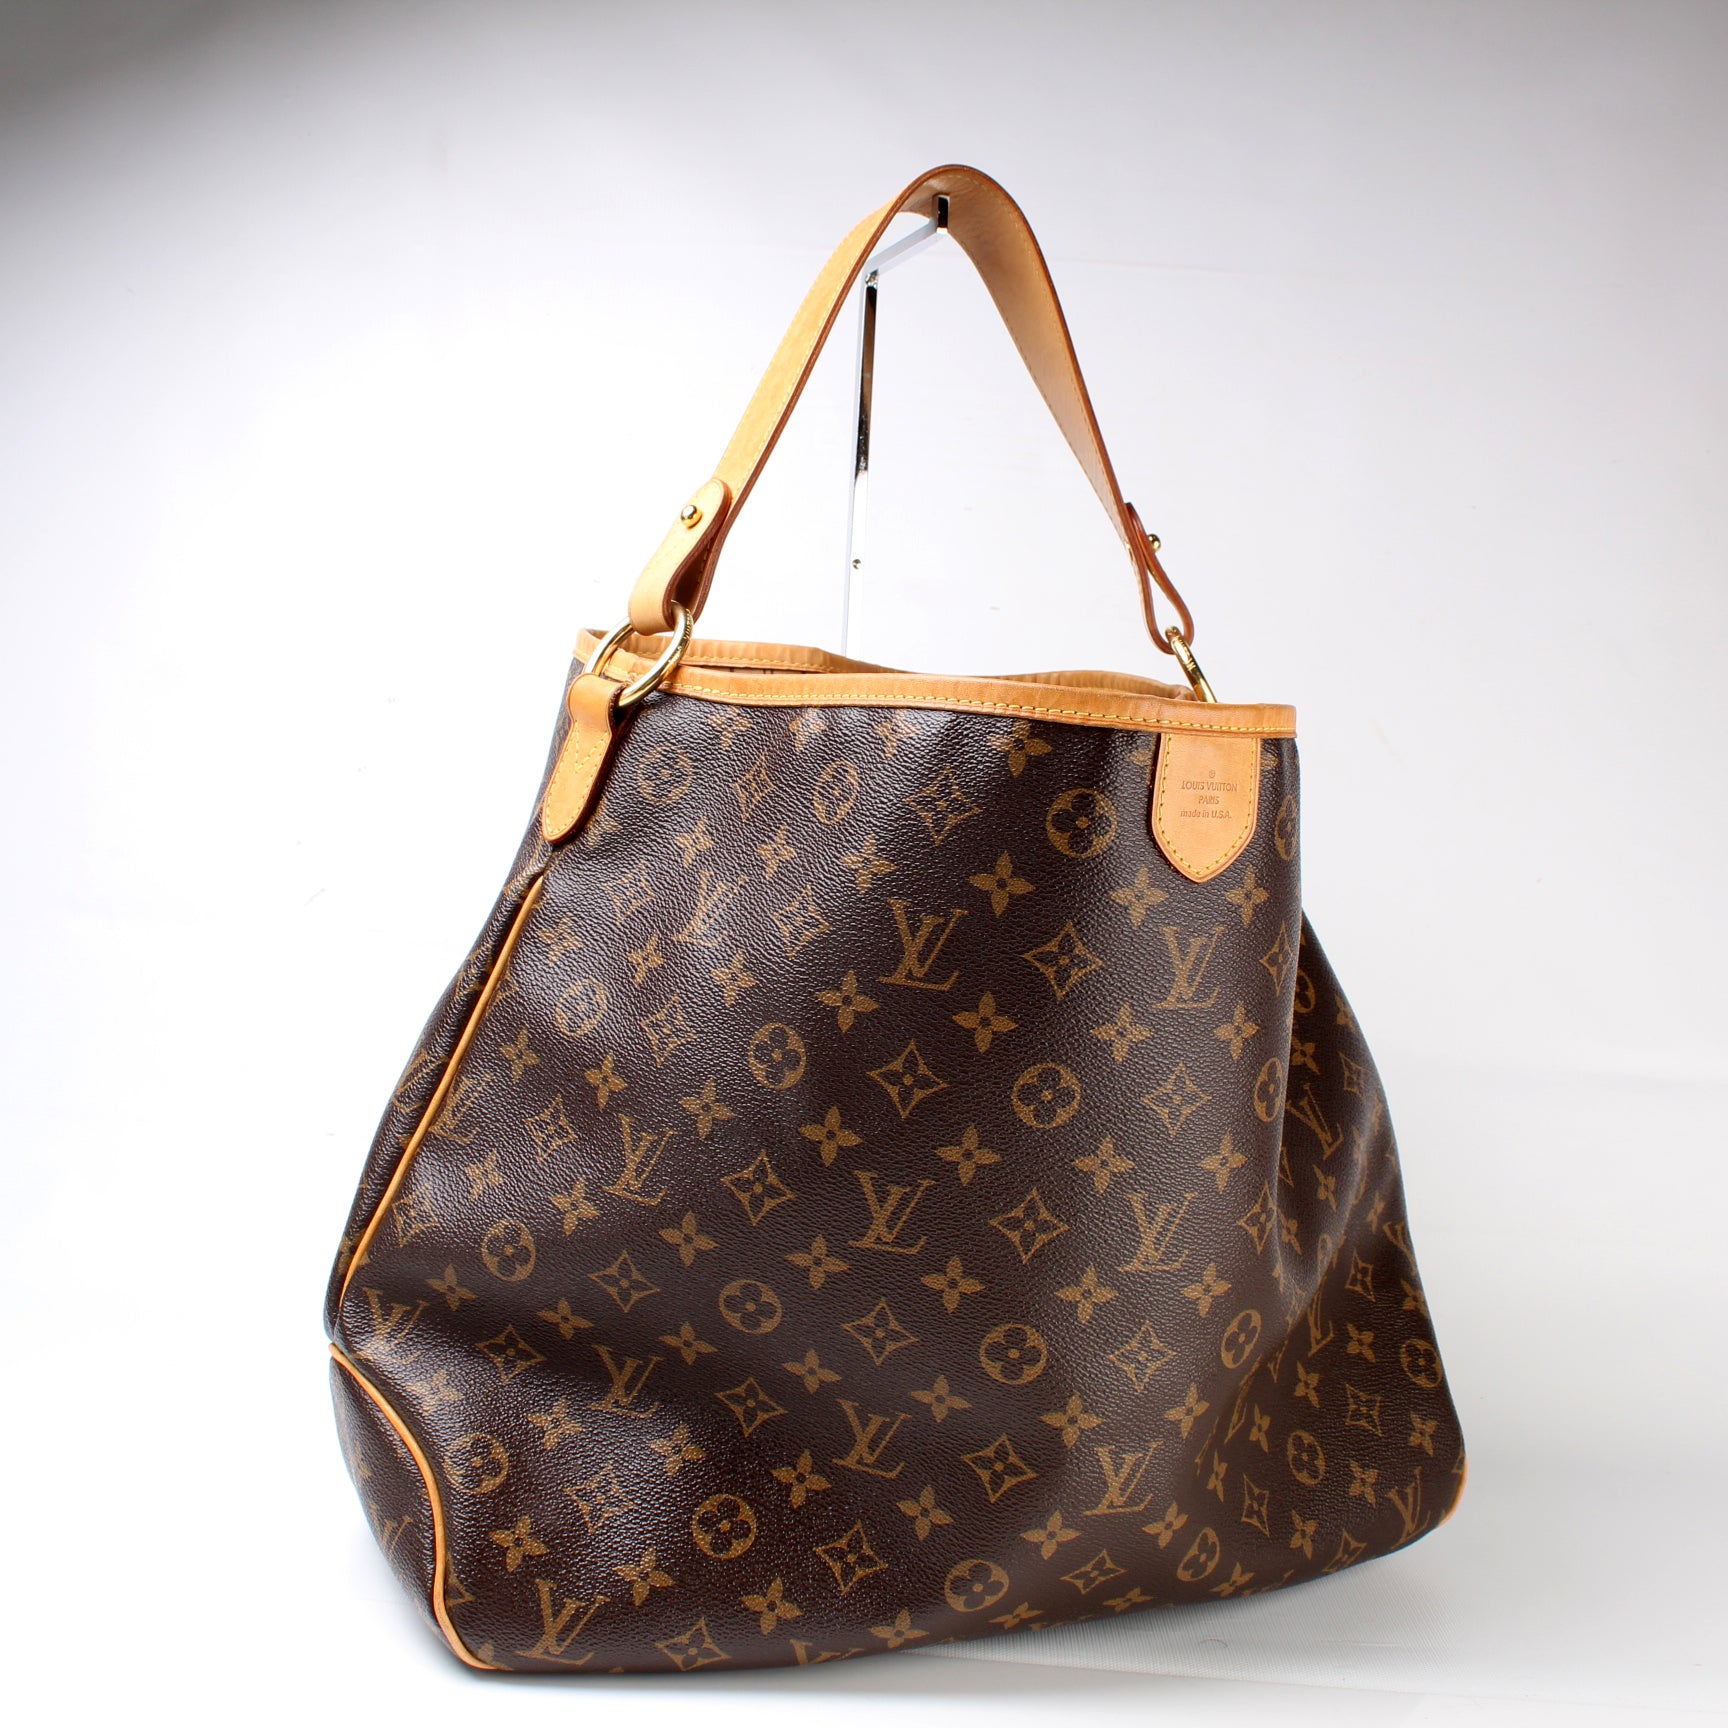 Louis Vuitton, Bags, Louis Vuitton Delightful Mm Monogram Canvas Tote Bag  Brown